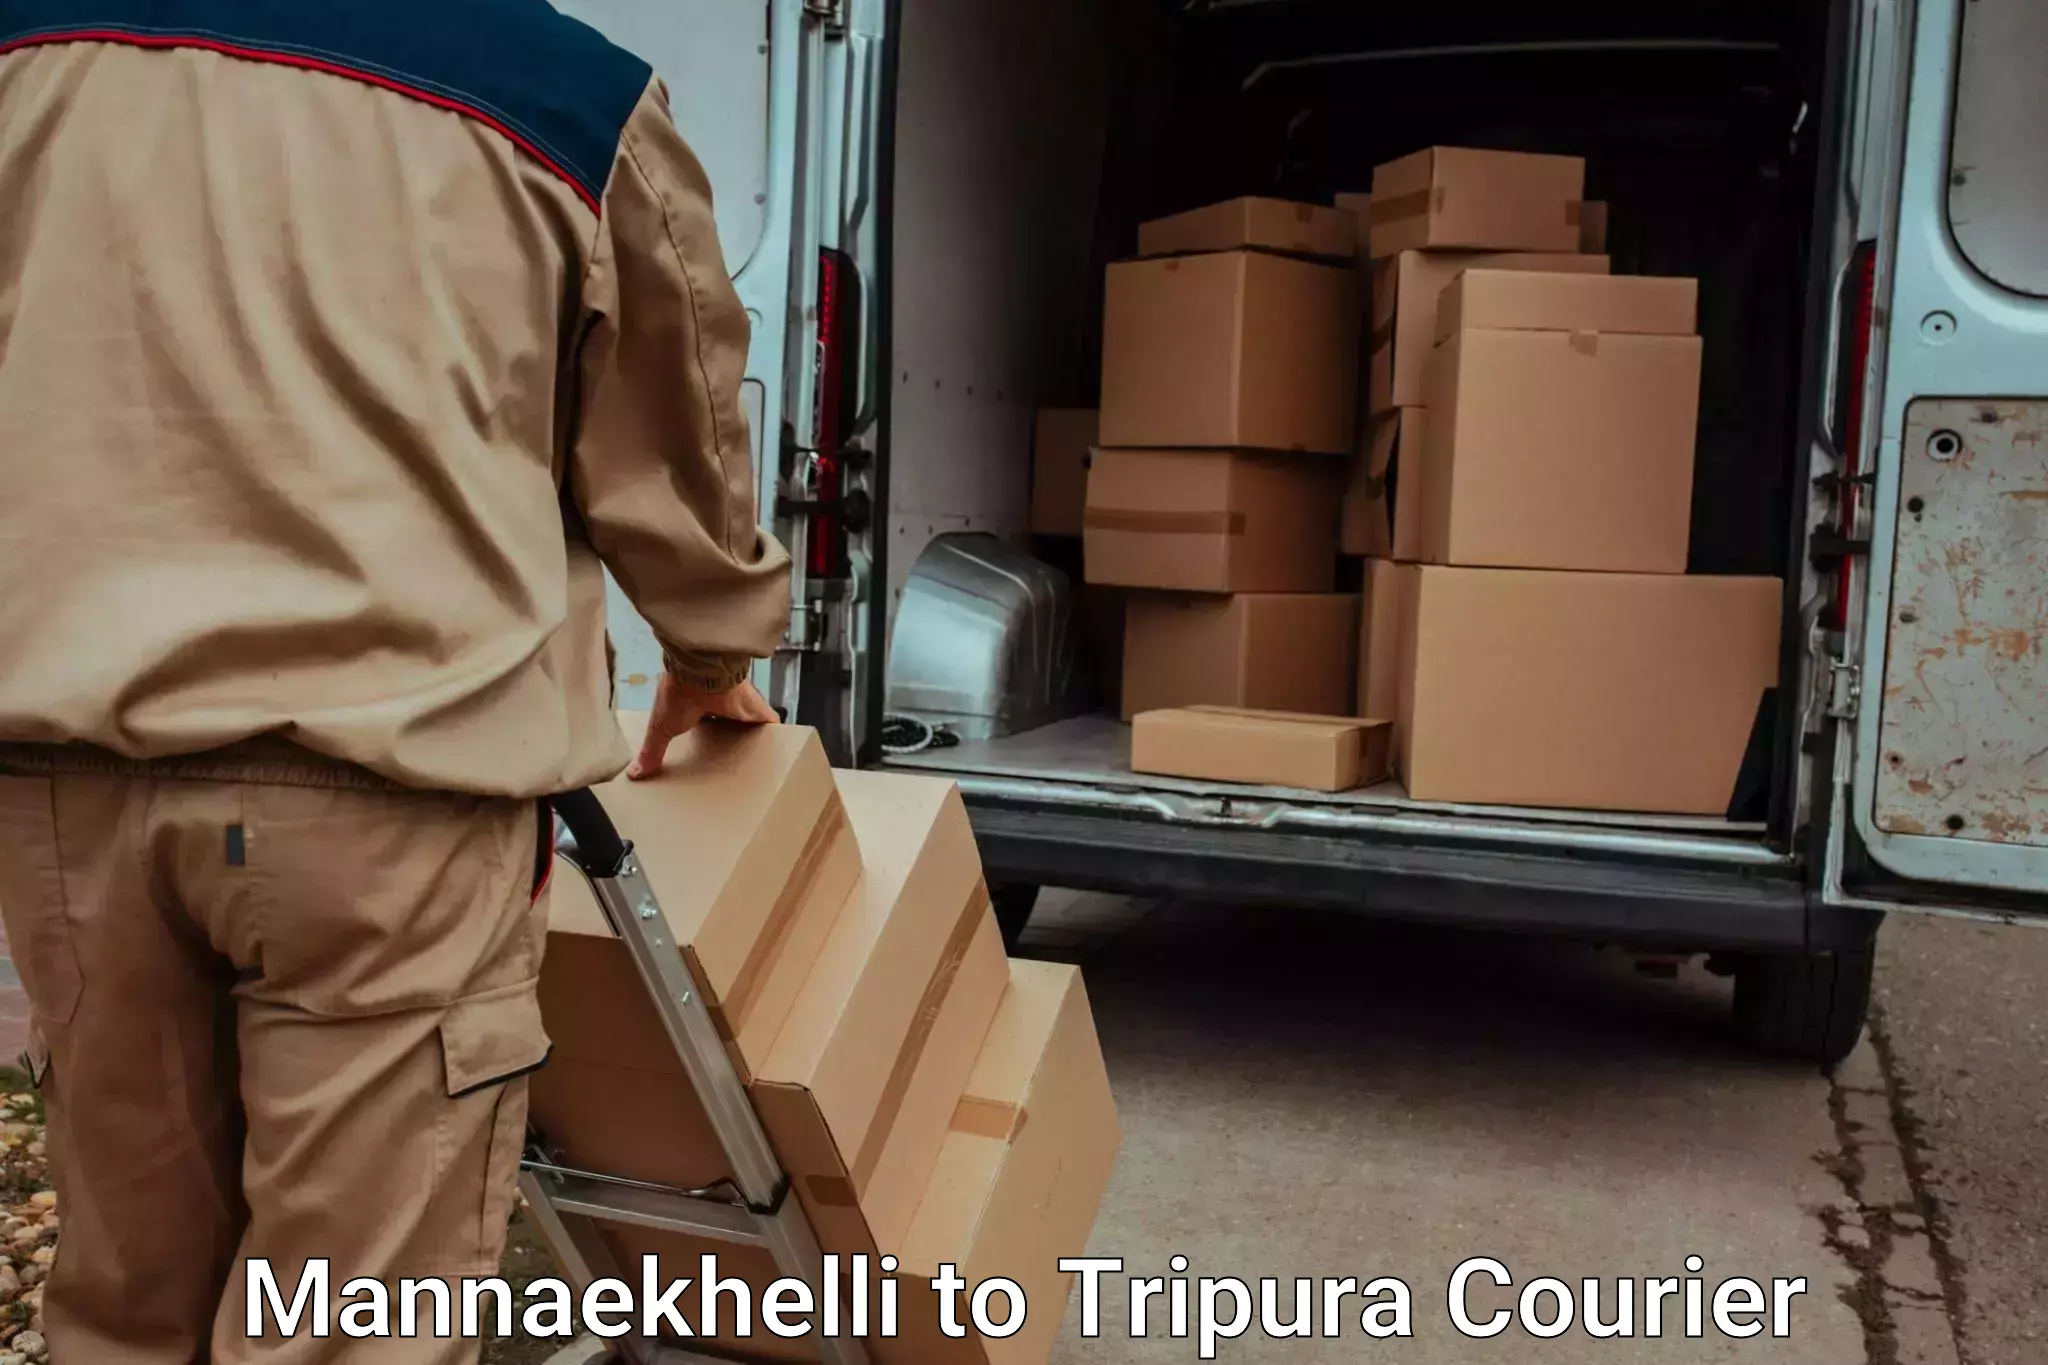 Luggage shipment processing in Mannaekhelli to Agartala